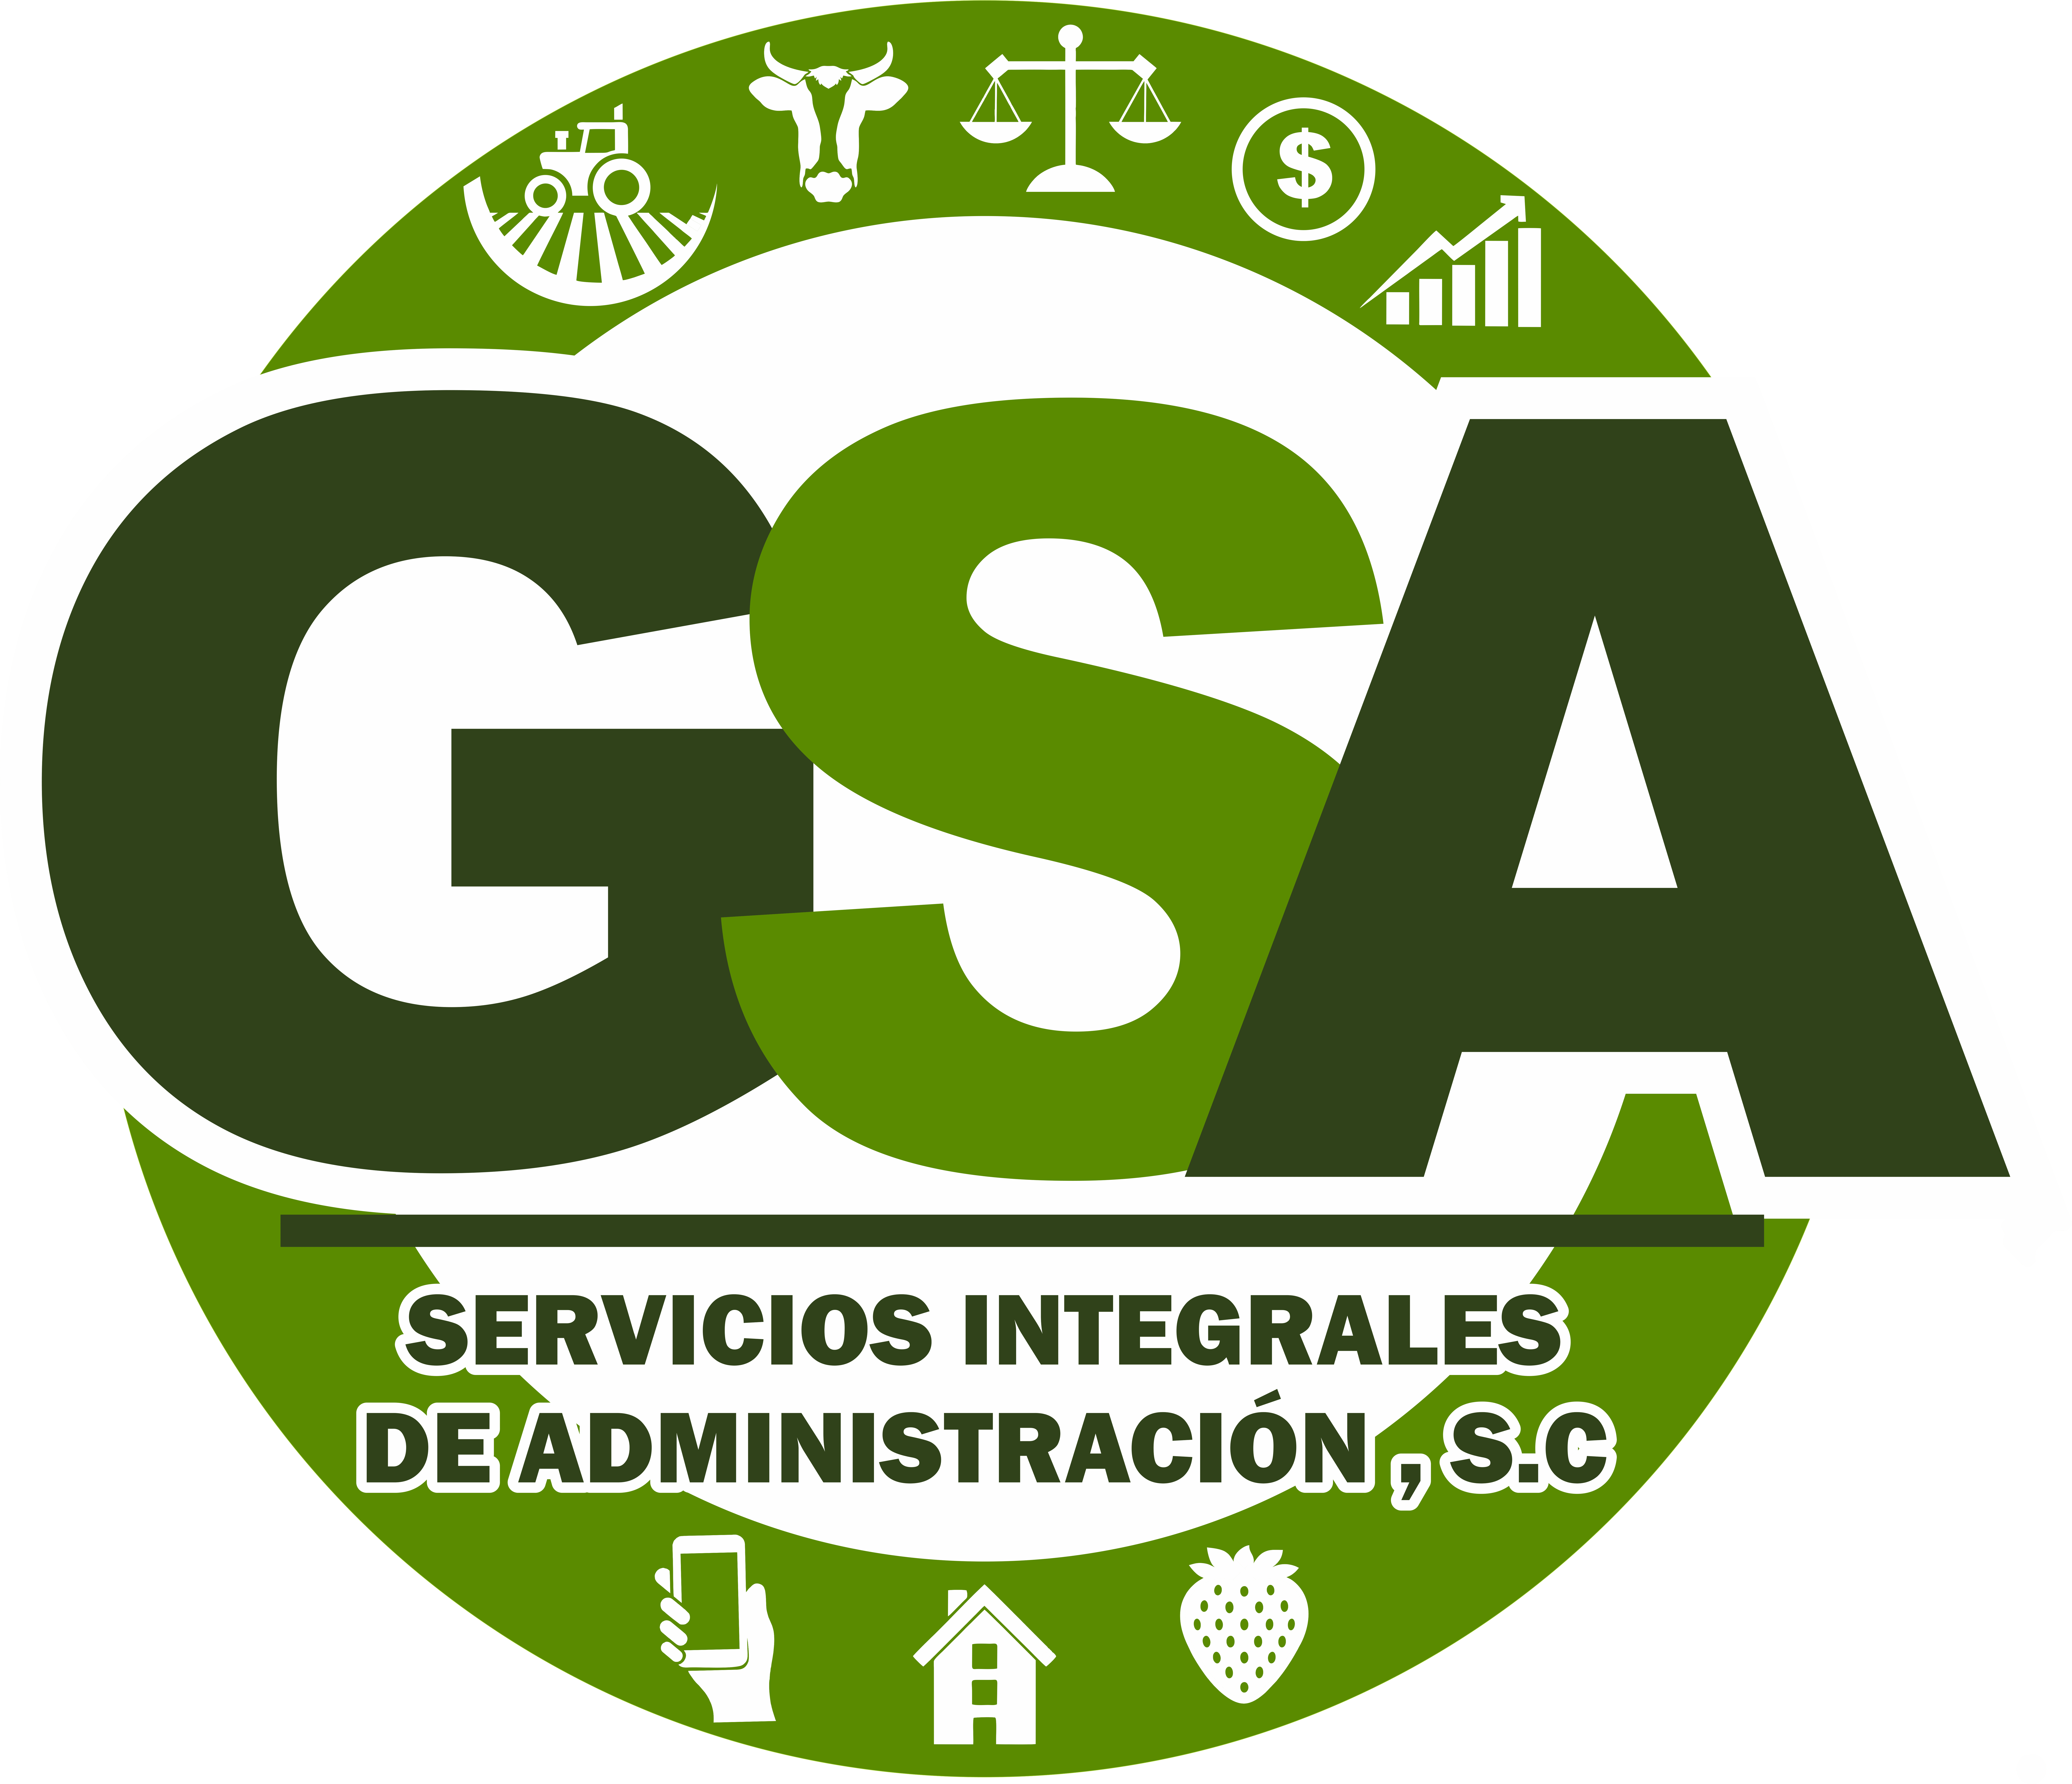 Gsa Servicios Integrales de Administración